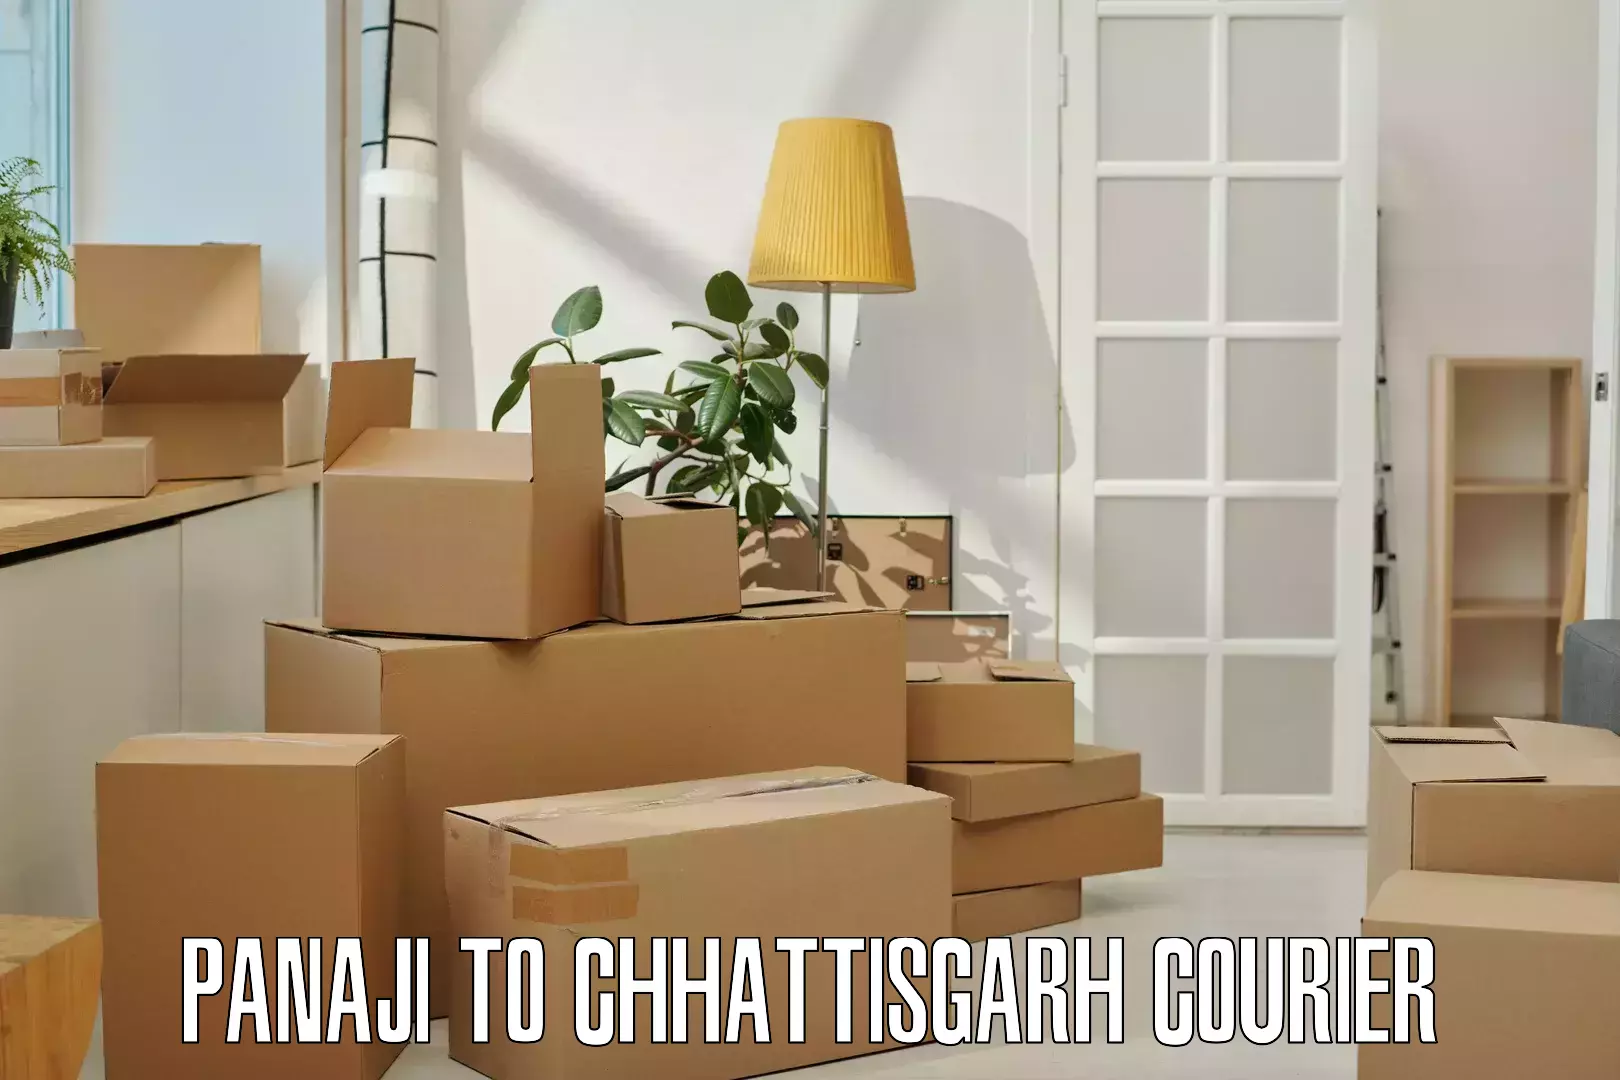 Quick dispatch service in Panaji to Chhattisgarh